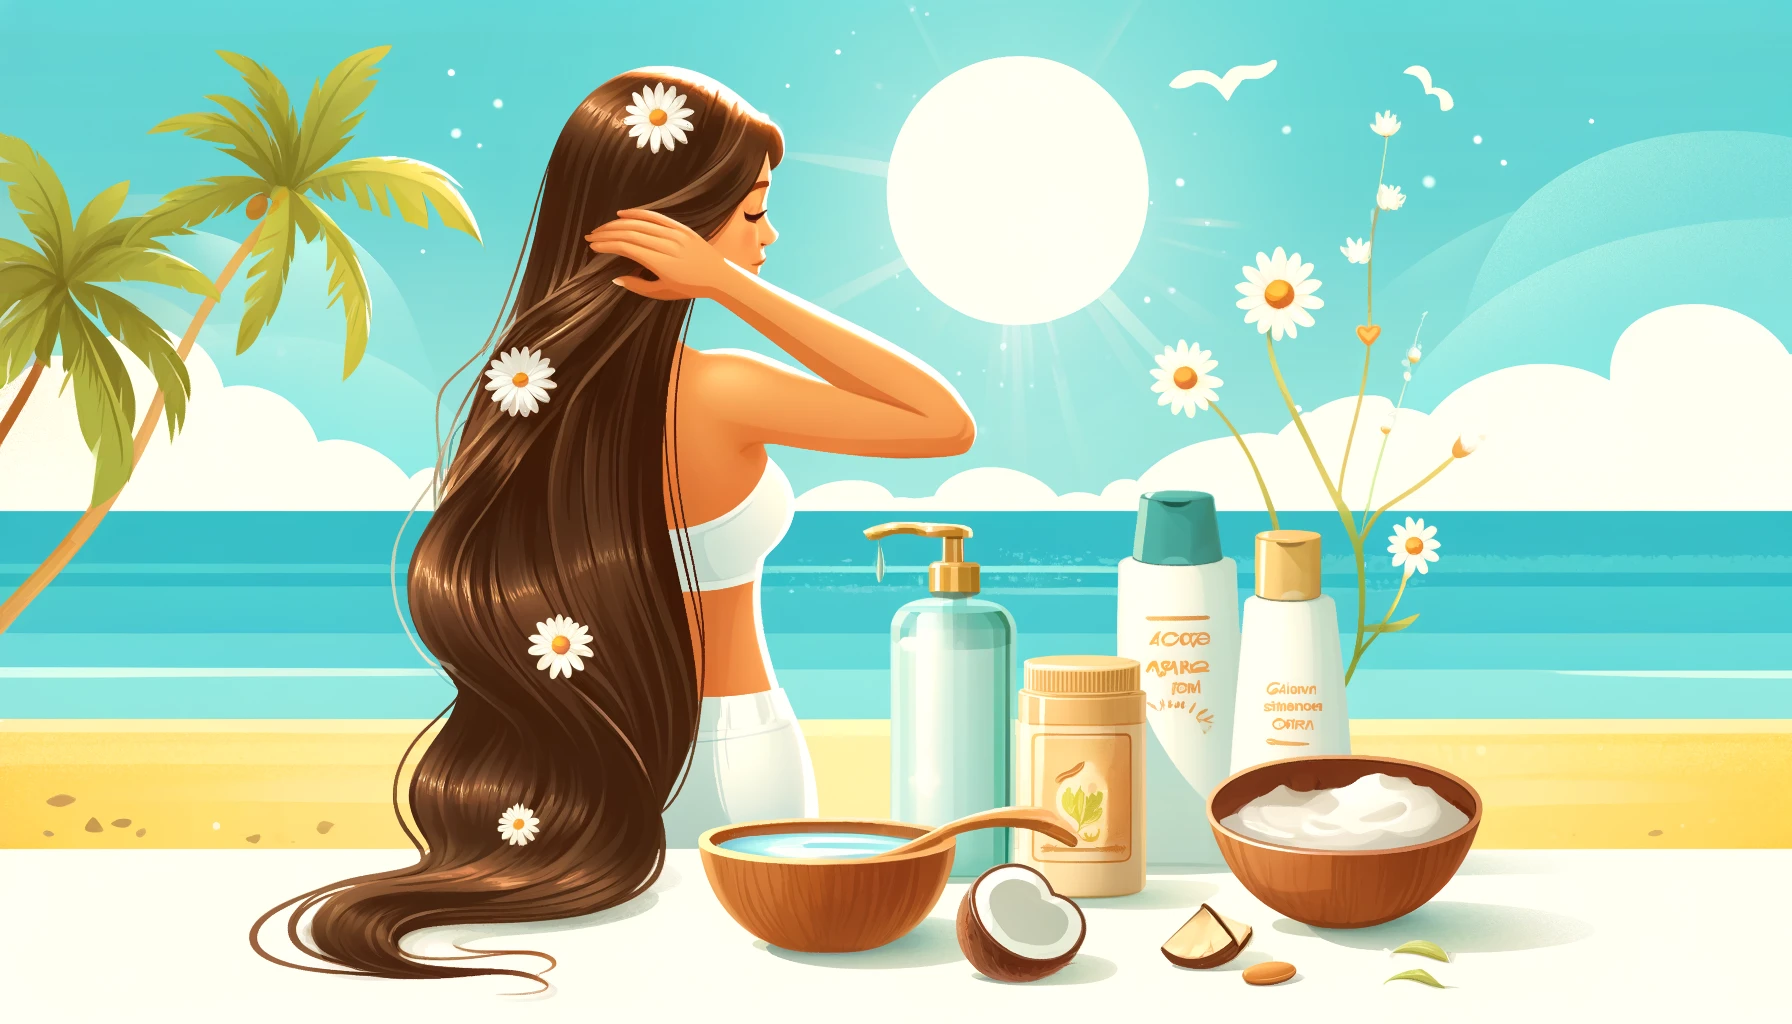 Les astuces pour garder ses cheveux hydratés et protégés du soleil avec des produits naturels.